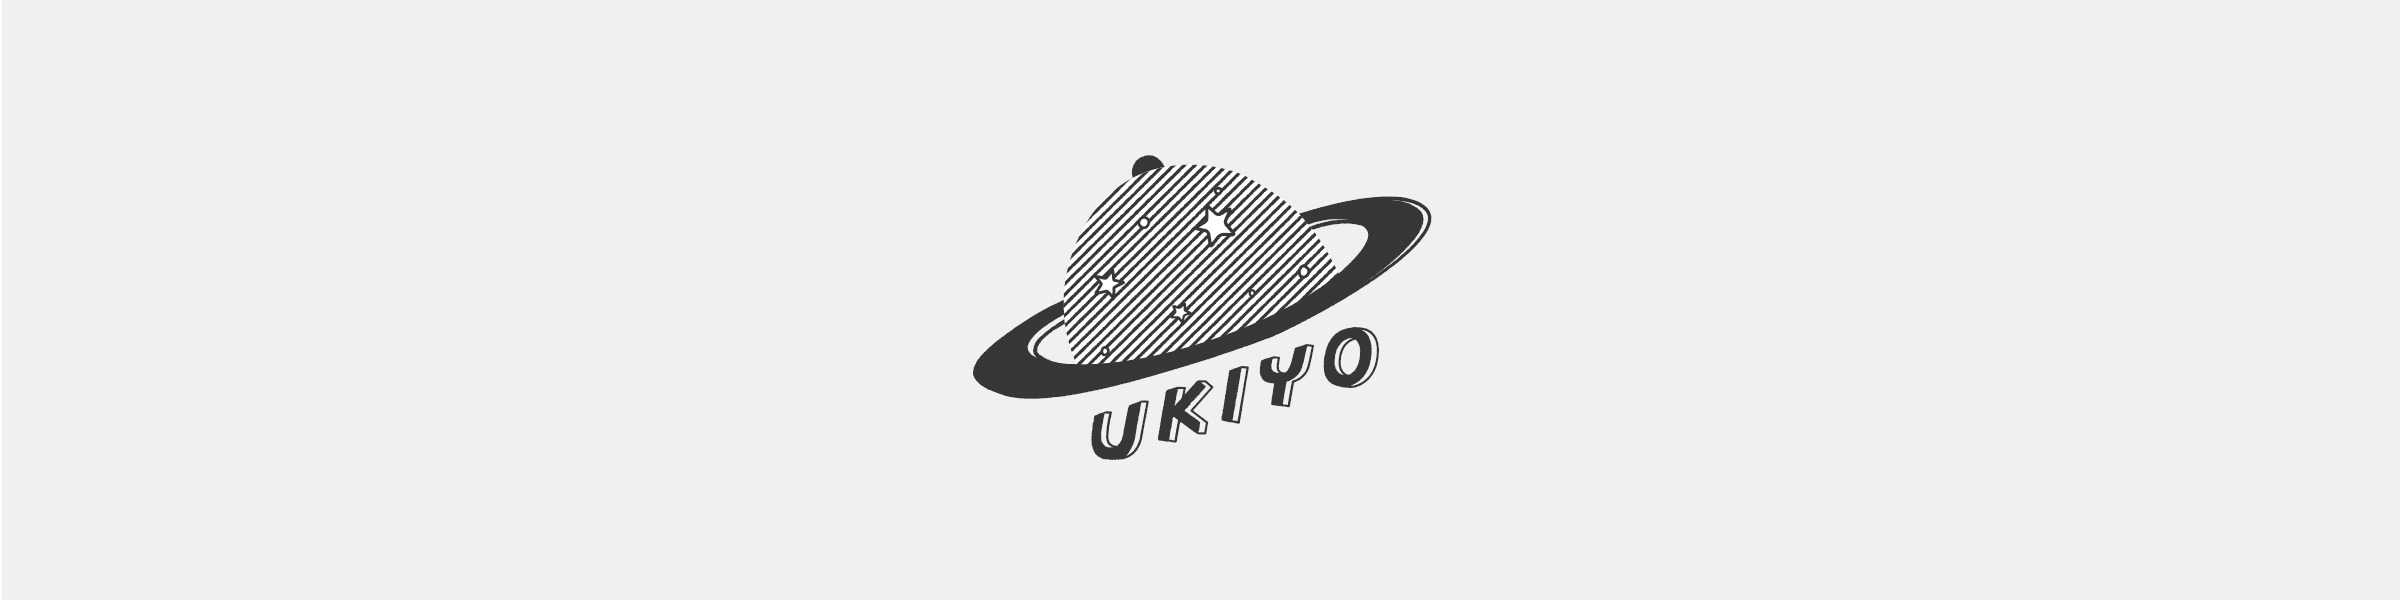 UKIYO / ウキヨ